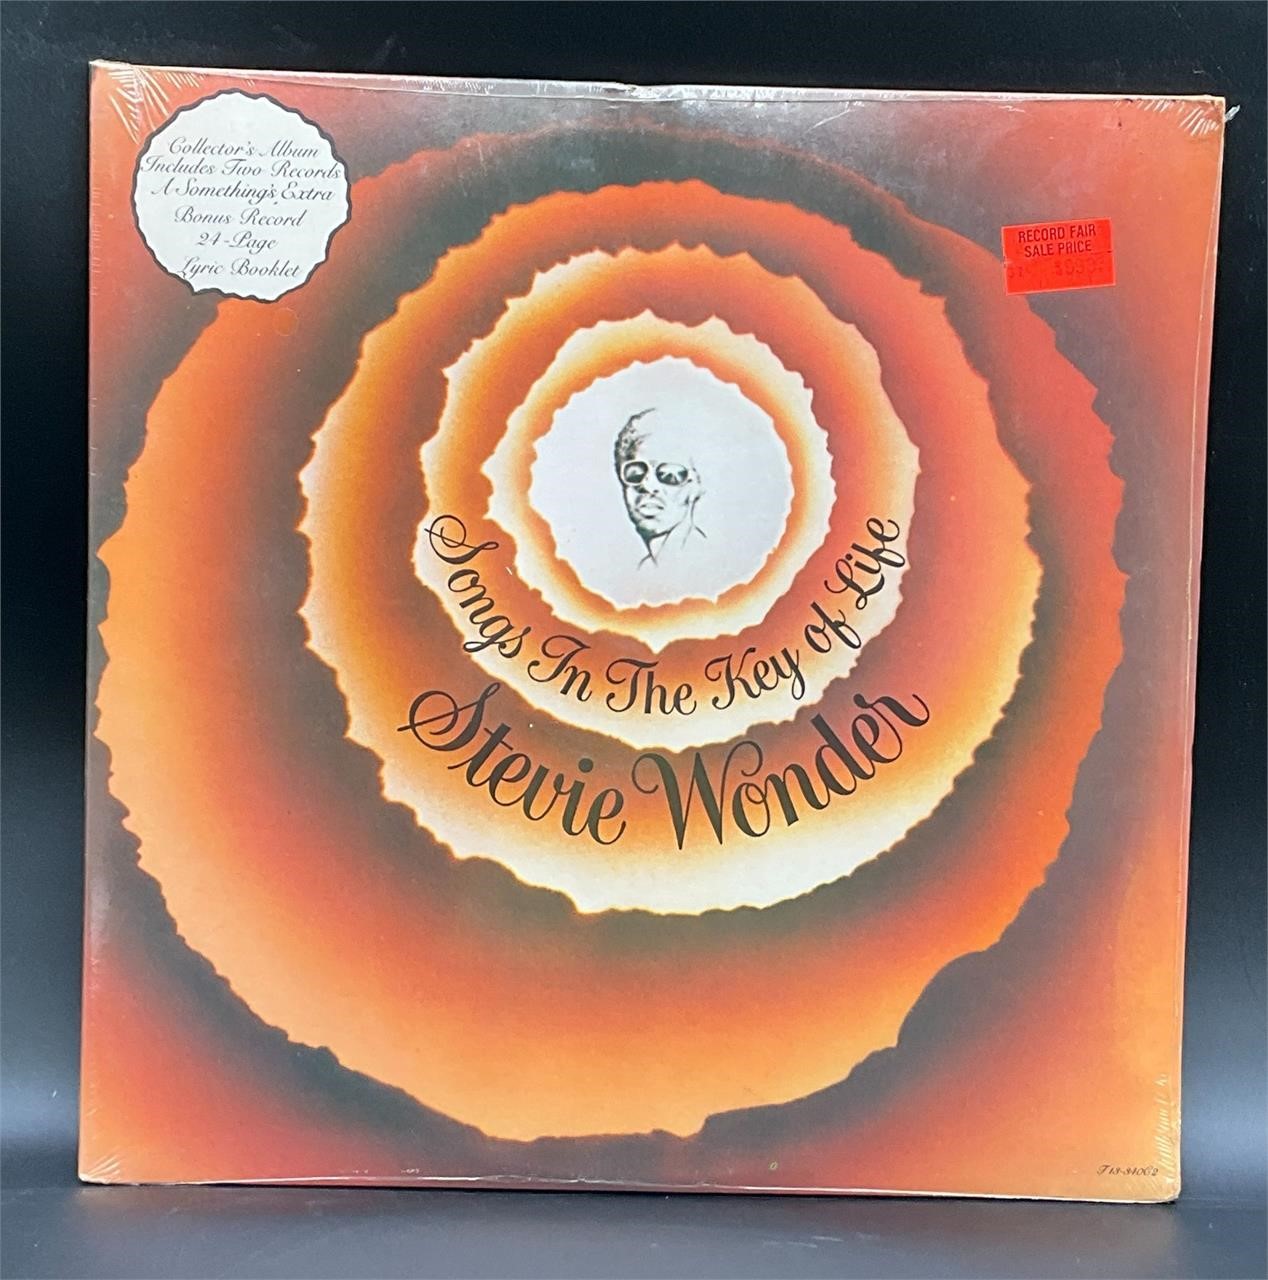 Sealed 1978 OG Stevie Wonder "Songs Key Of Life"